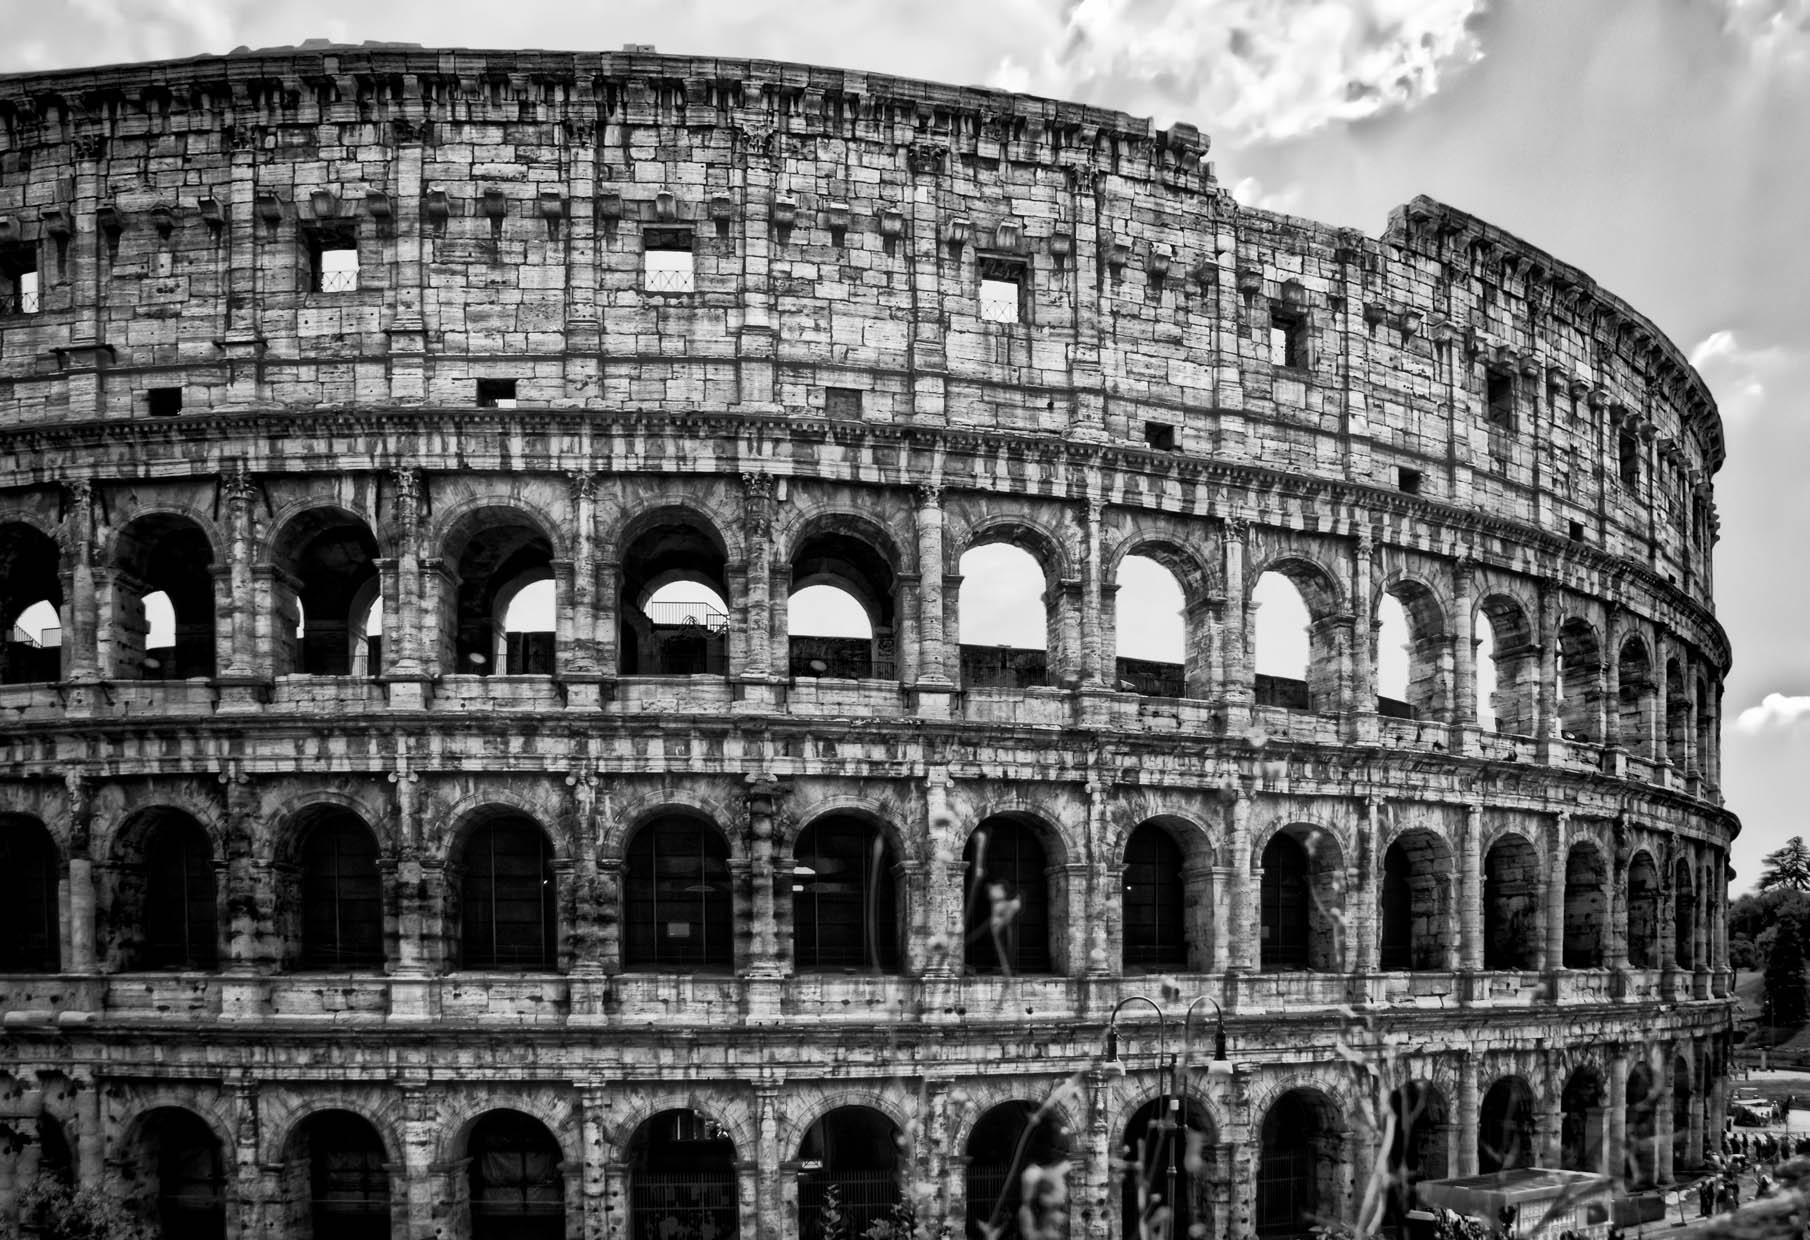 Colosseum_01-bw.jpg